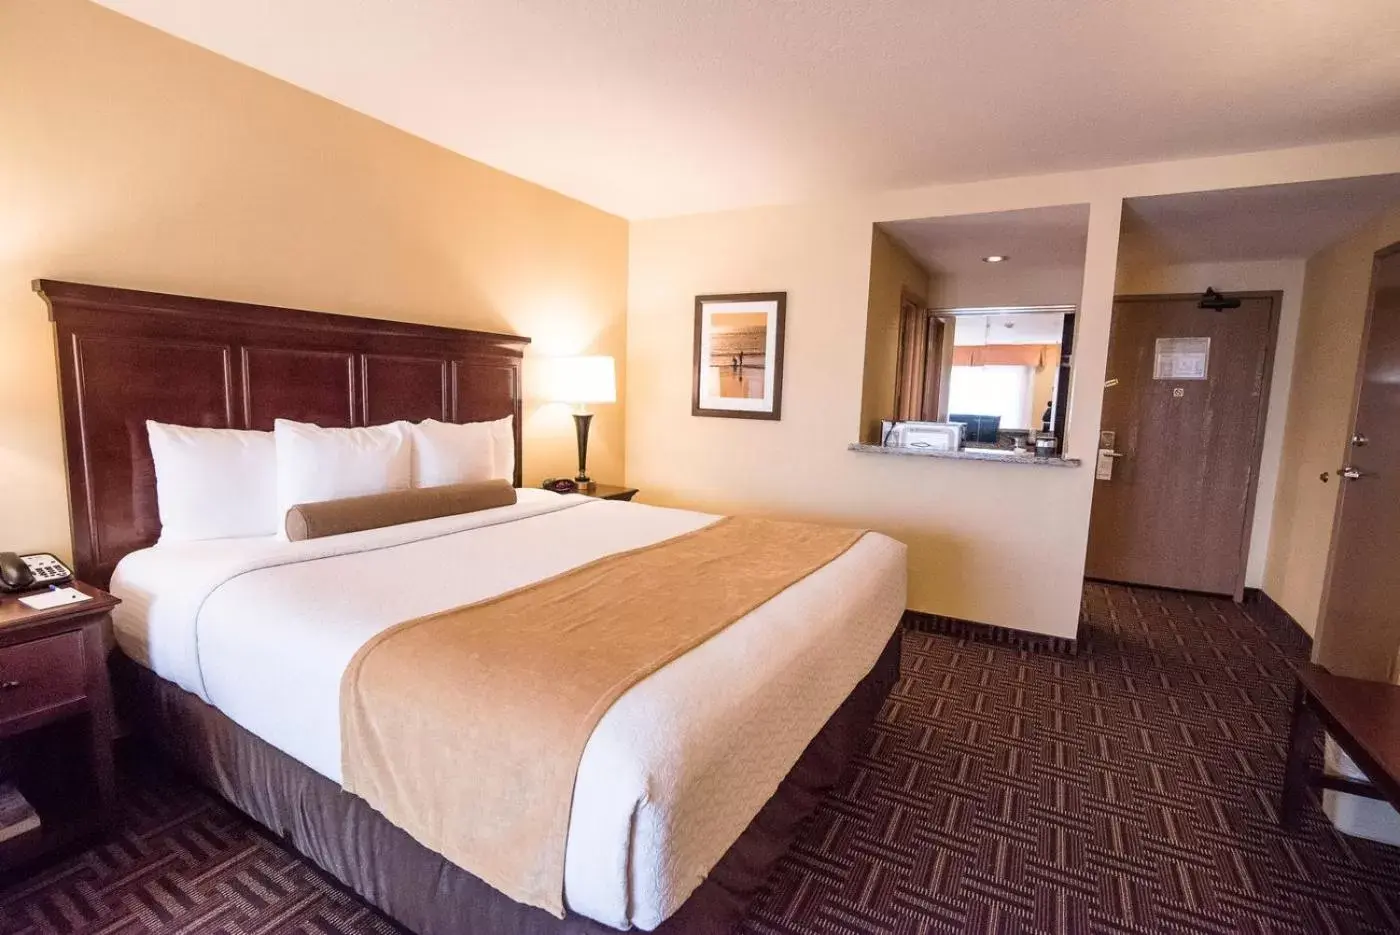 Bedroom, Bed in Best Western Plus Redondo Beach Inn